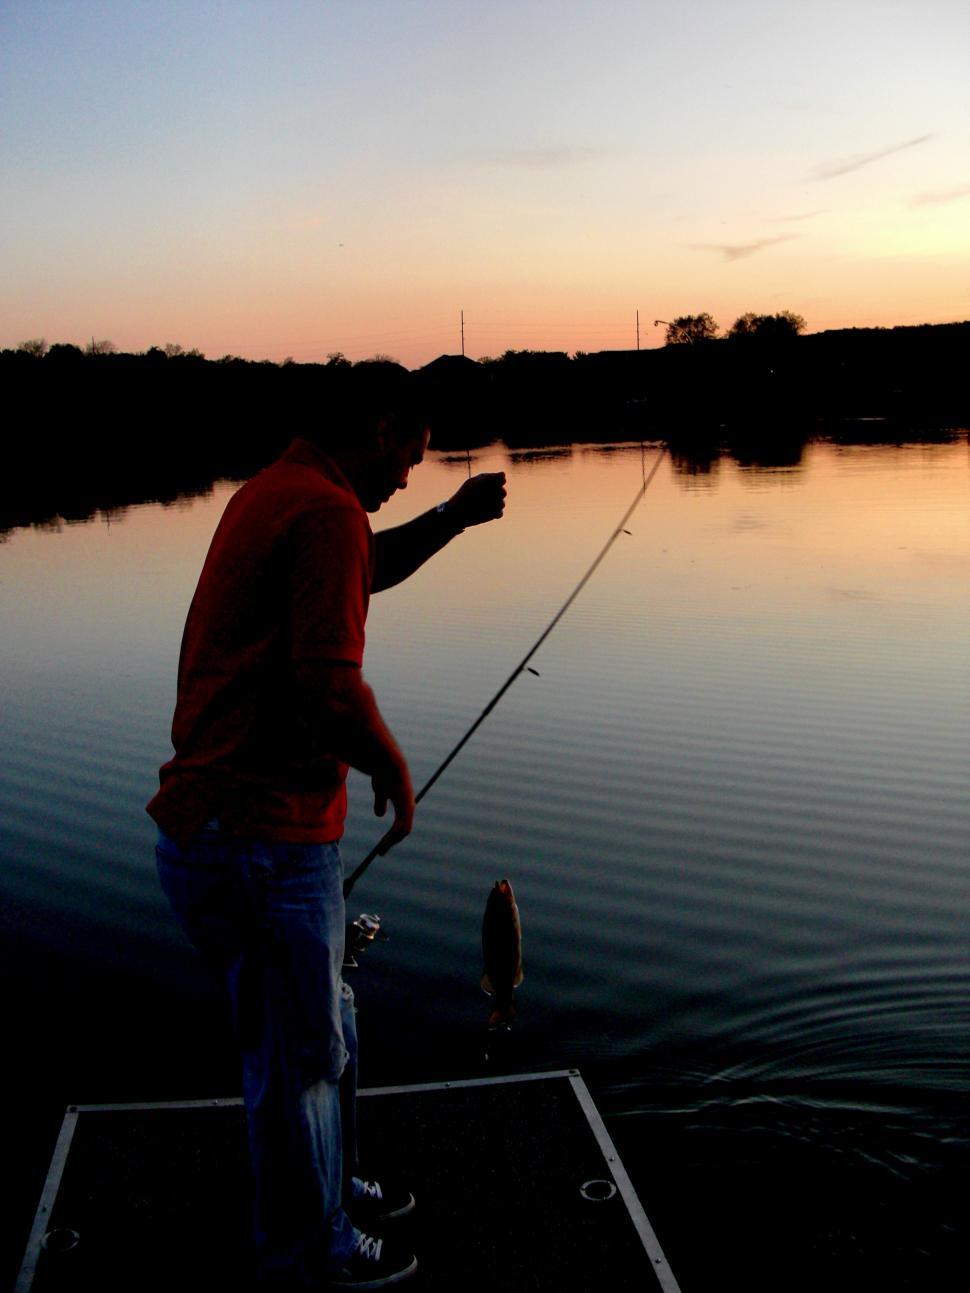 Free Image of Man Fishing on Lake at Sunset 